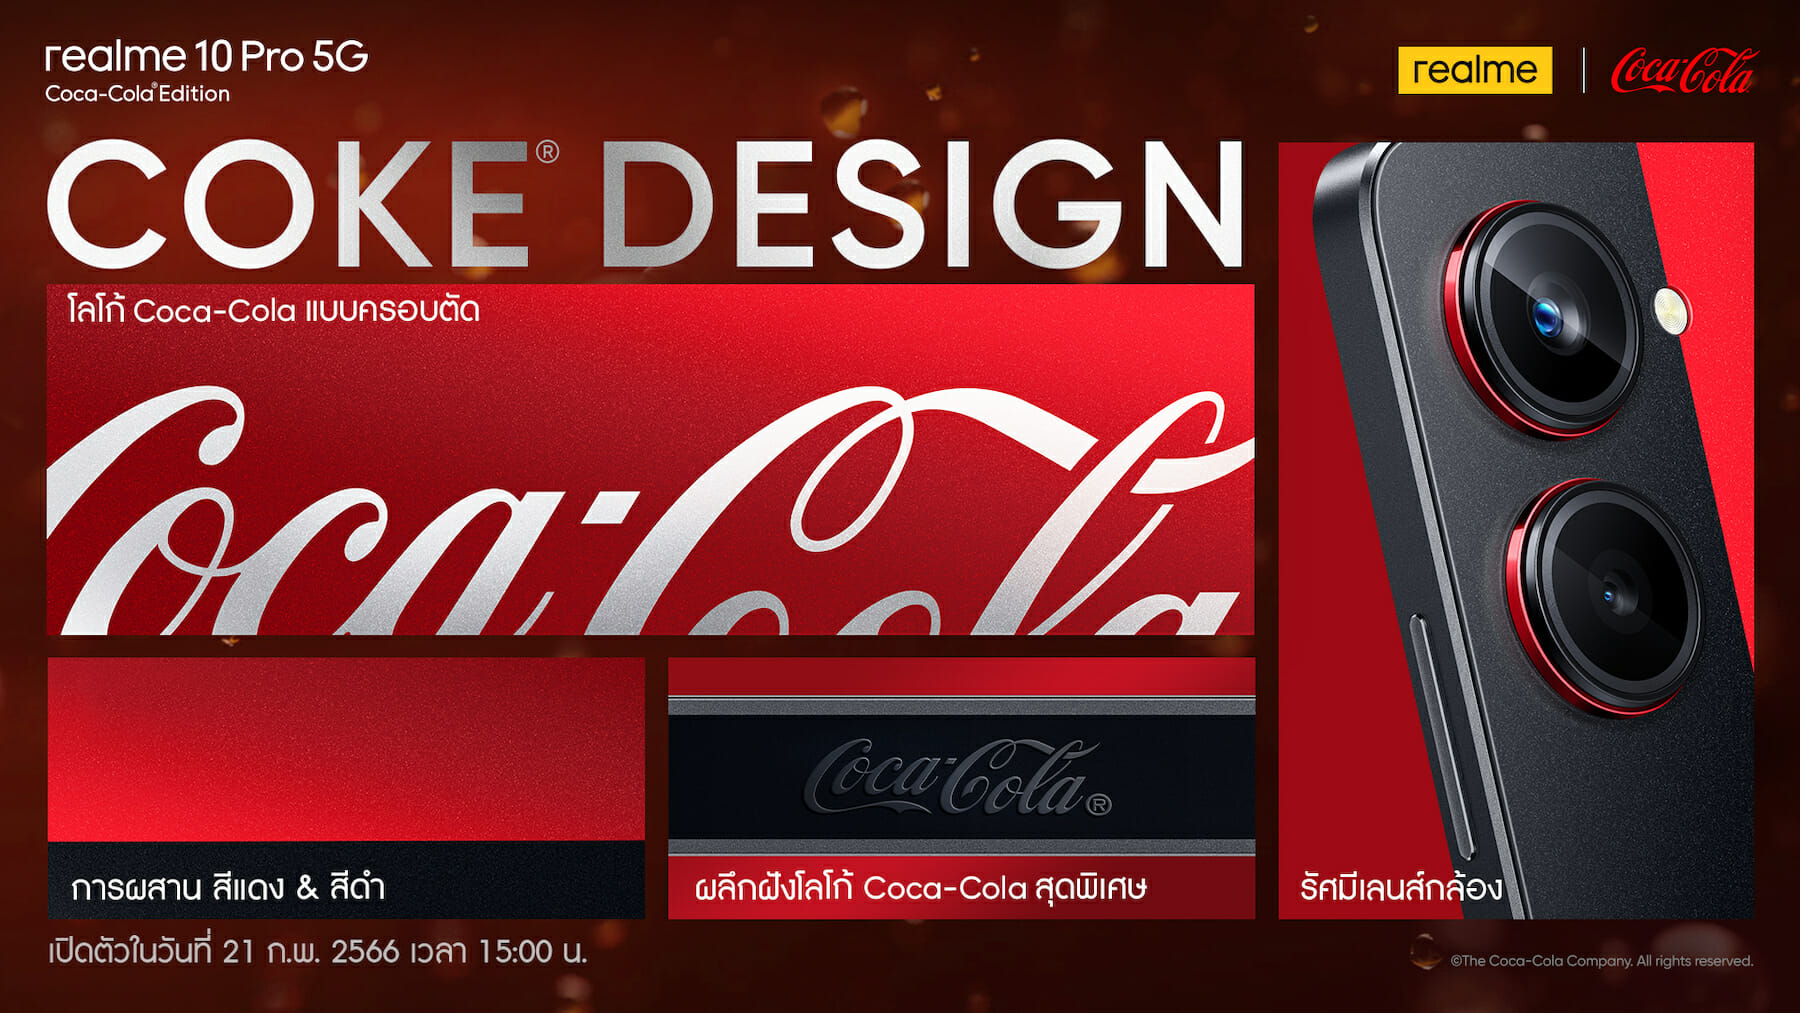 หนึ่งเดียวในโลก! “เรียลมี” จับมือ “โคคา-โคล่า” เปิดตัวสมาร์ตโฟนรุ่นลิมิเต็ด realme 10 Pro 5G Coca-Cola® Edition 3